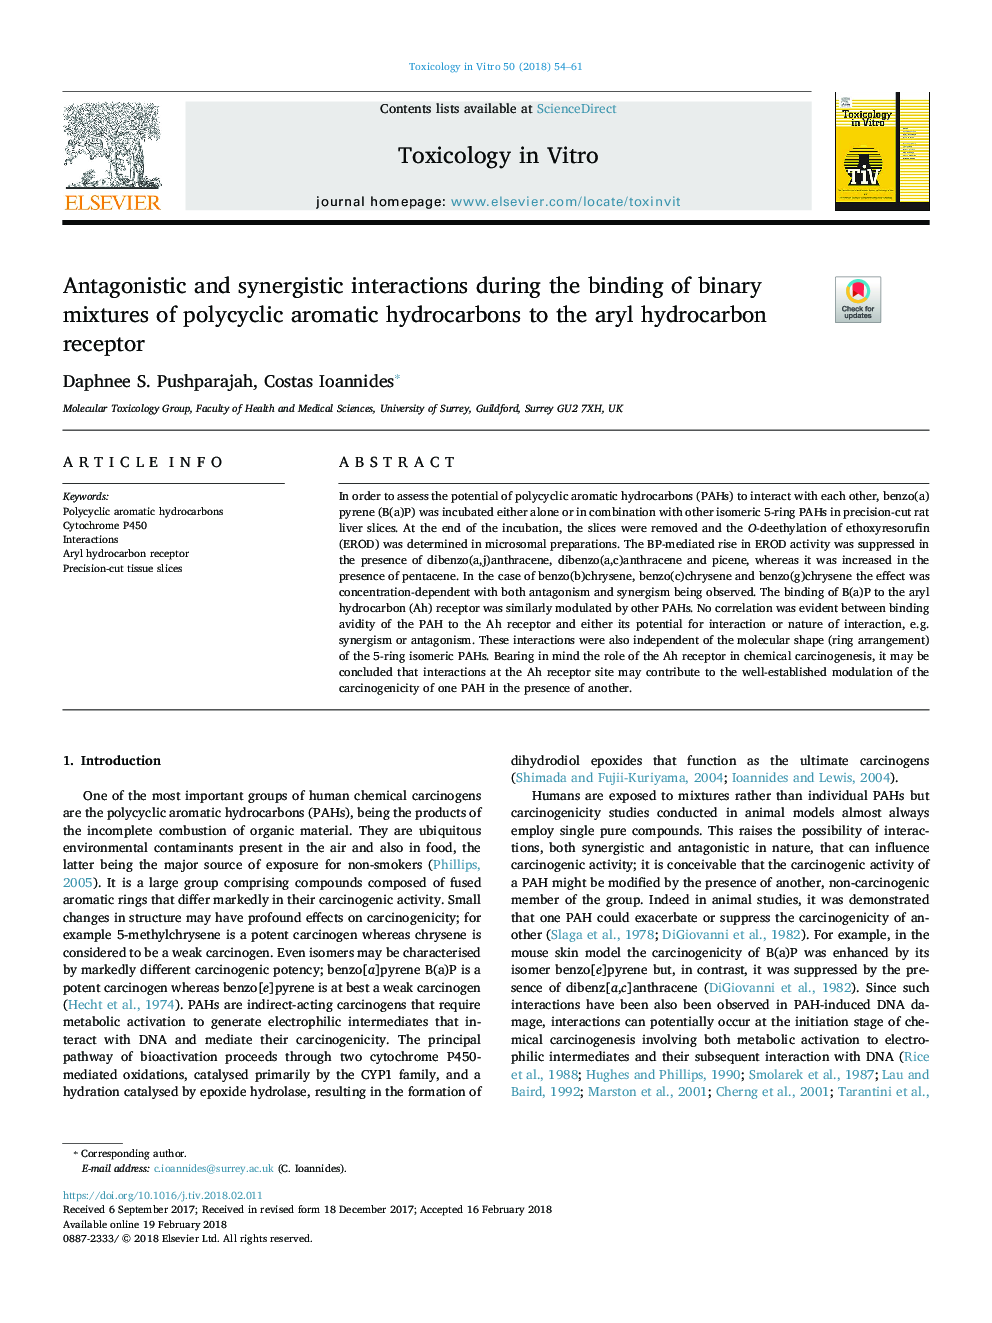 تعاملات آنتاگونیستی و سینرژیک در هنگام اتصال مخلوط های دوتایی از هیدروکربن های آروماتیک چند حلقه ای به گیرنده های آرویل هیدروکربن 